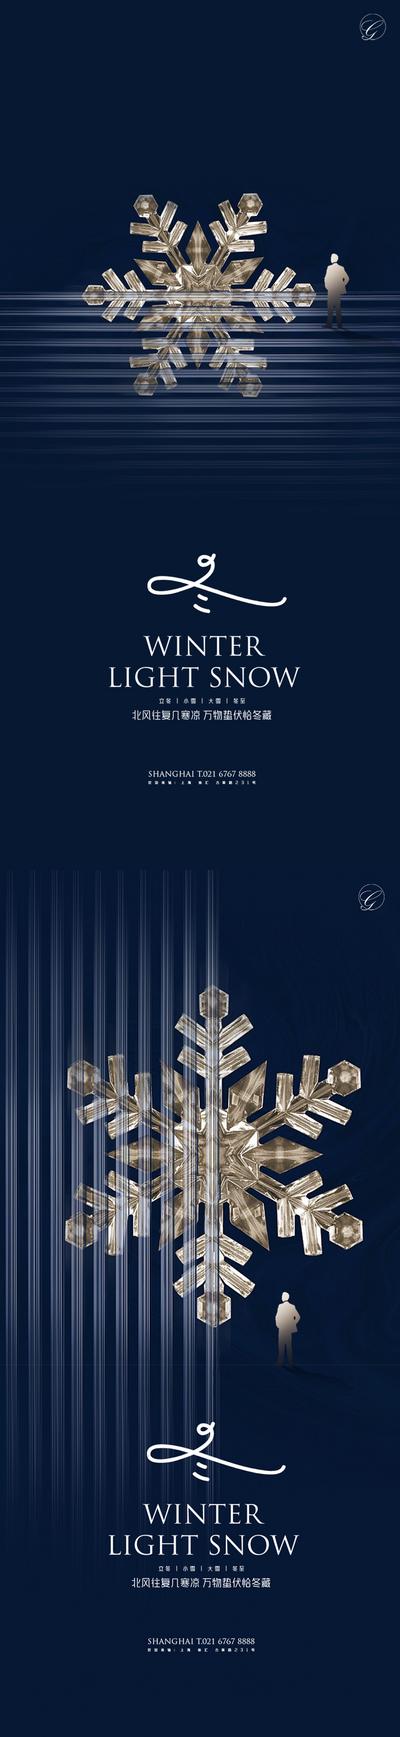 南门网 海报 二十四节气 系列 立冬 小雪 大雪 冬至 雪花 